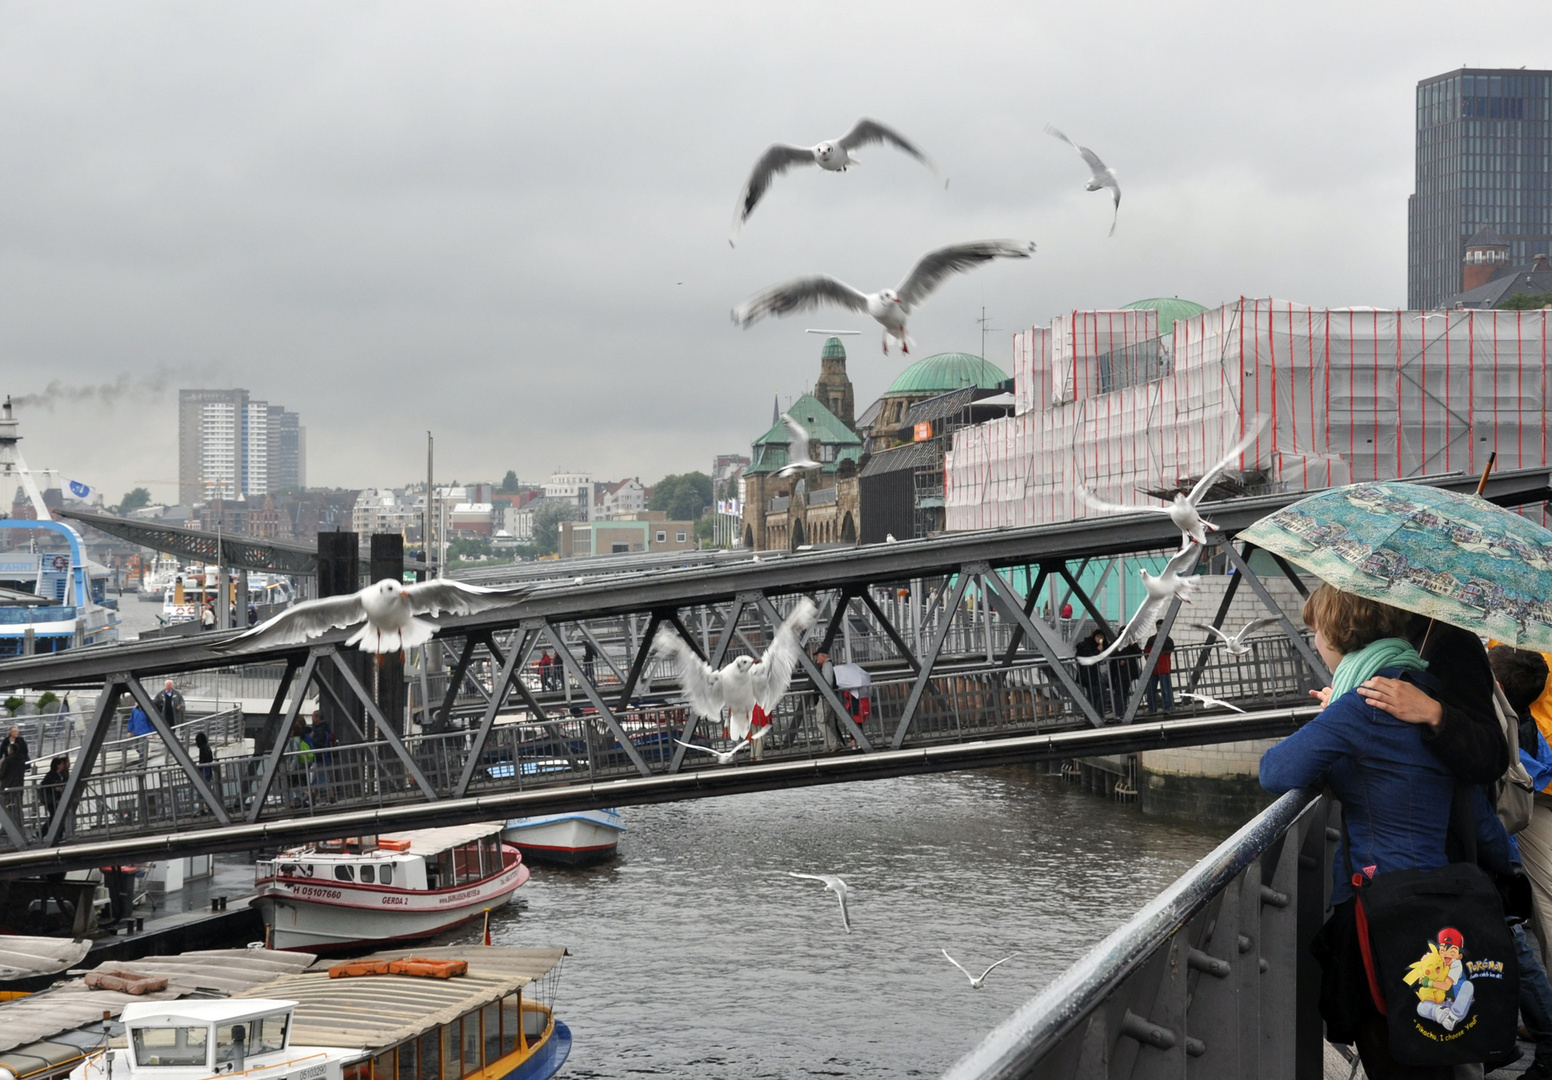  Hamburg  im Regen  Foto Bild deutschland europe 